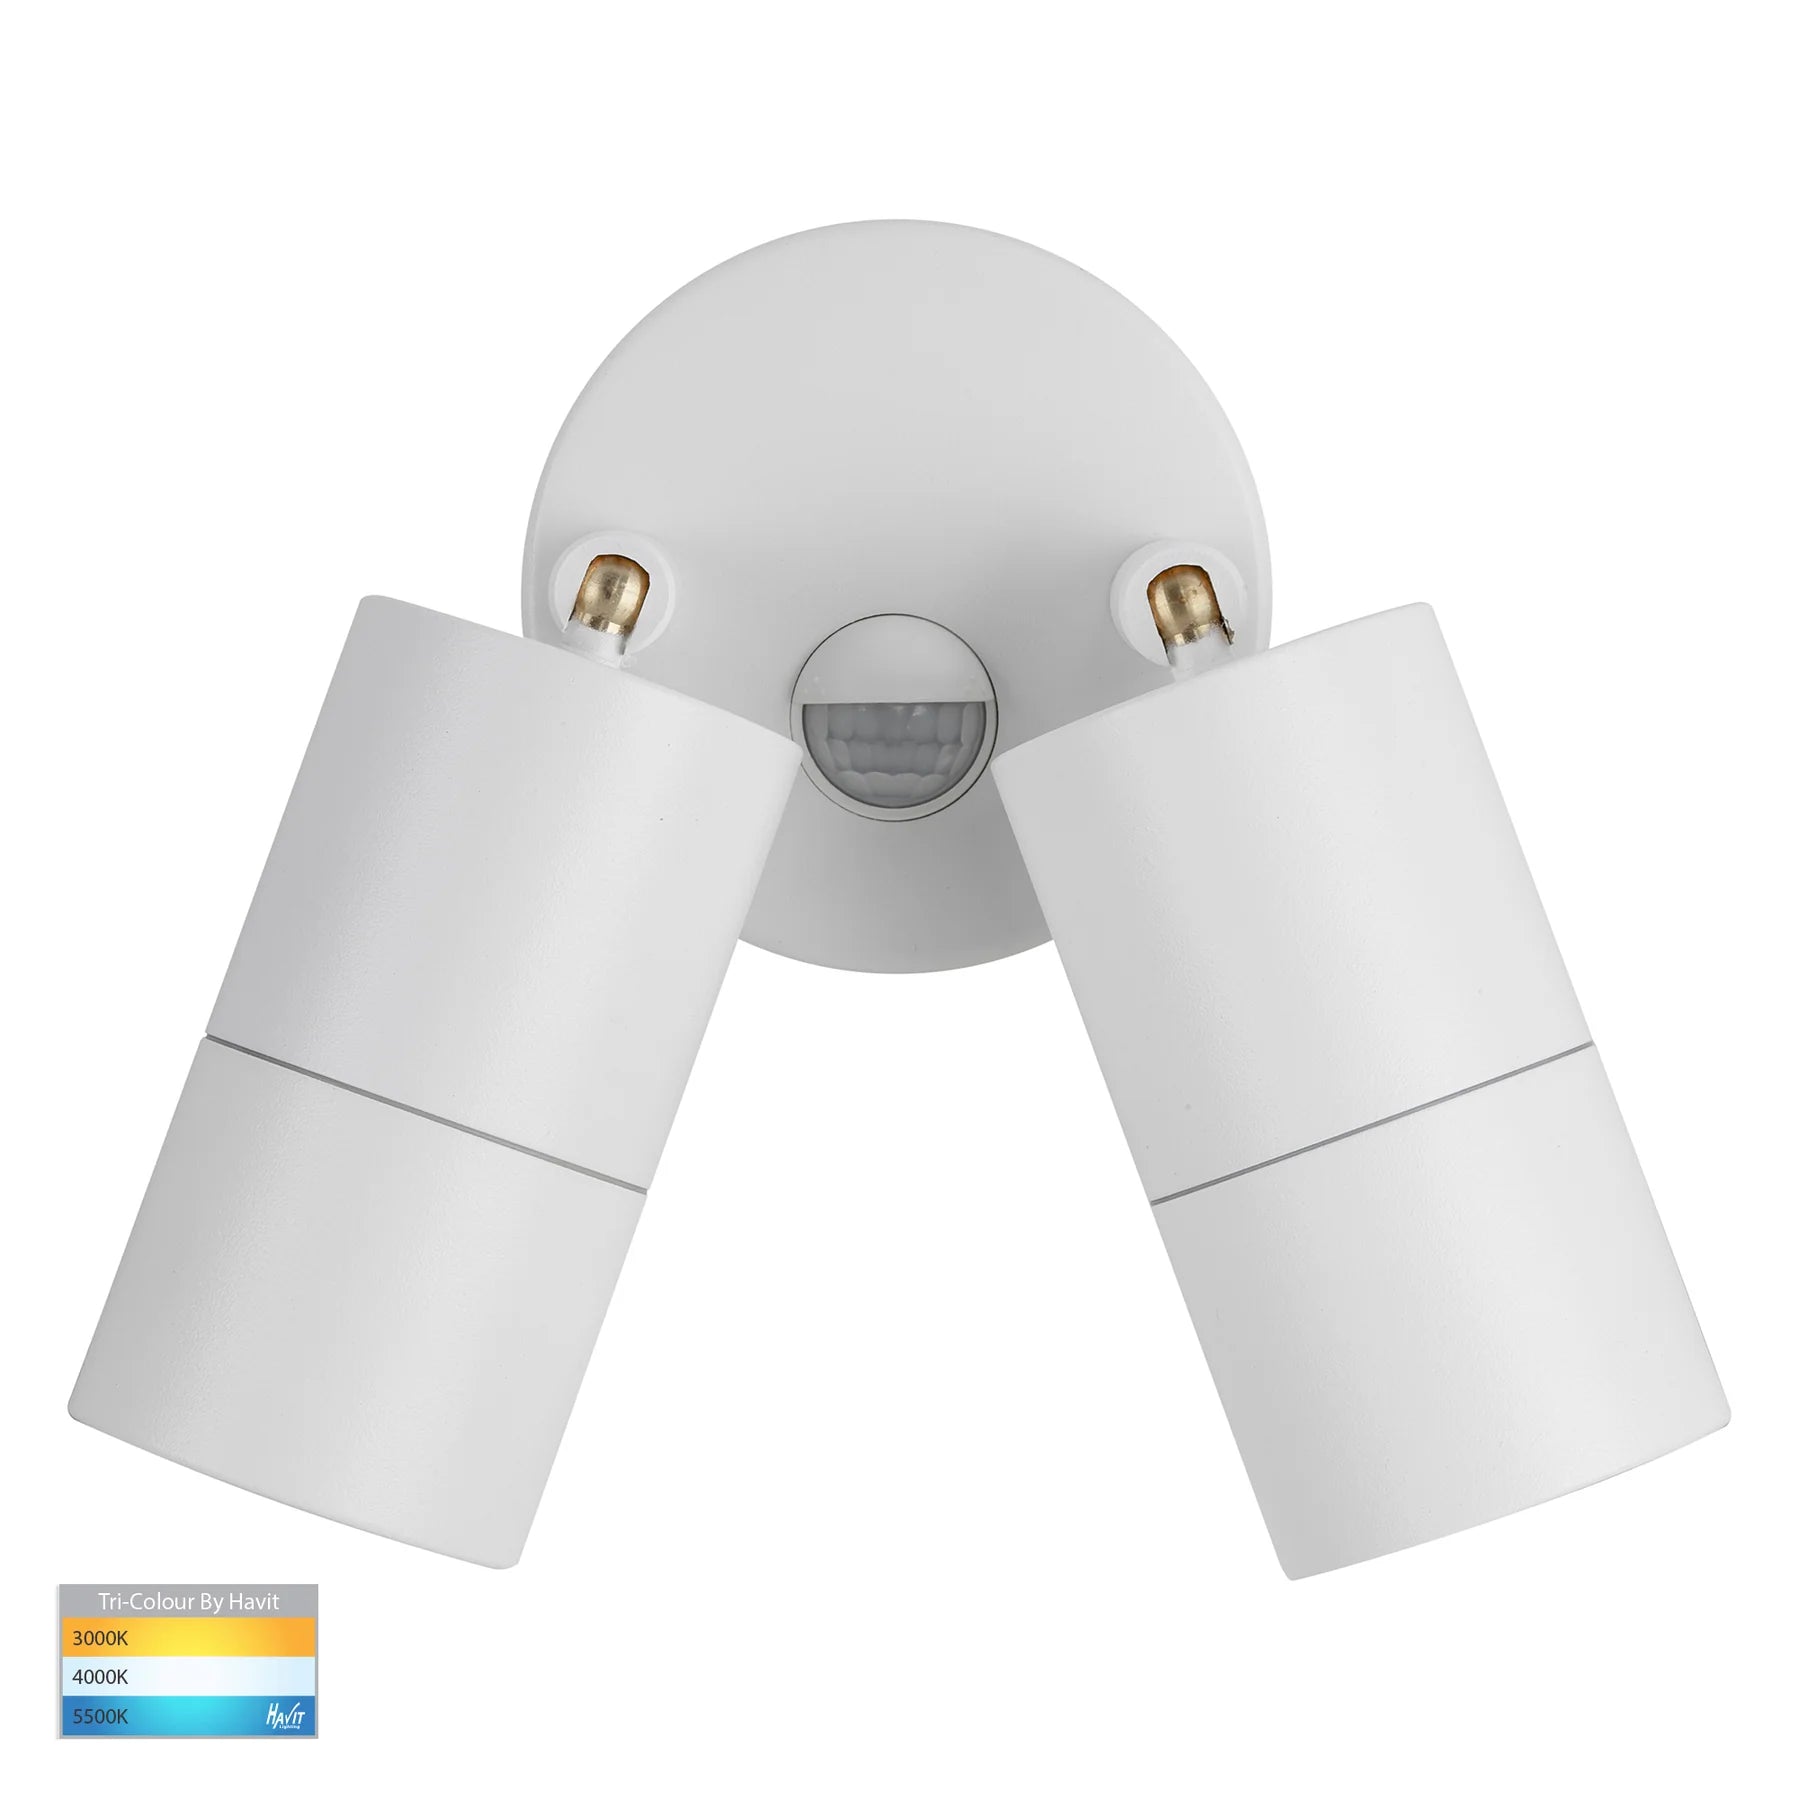 Tivah Double Adj. Wall Pillar Light With Sensor CCT in White Havit Lighting - HV1335T-PIR, HV1336T-PIR - Mases LightingHavit Lighting